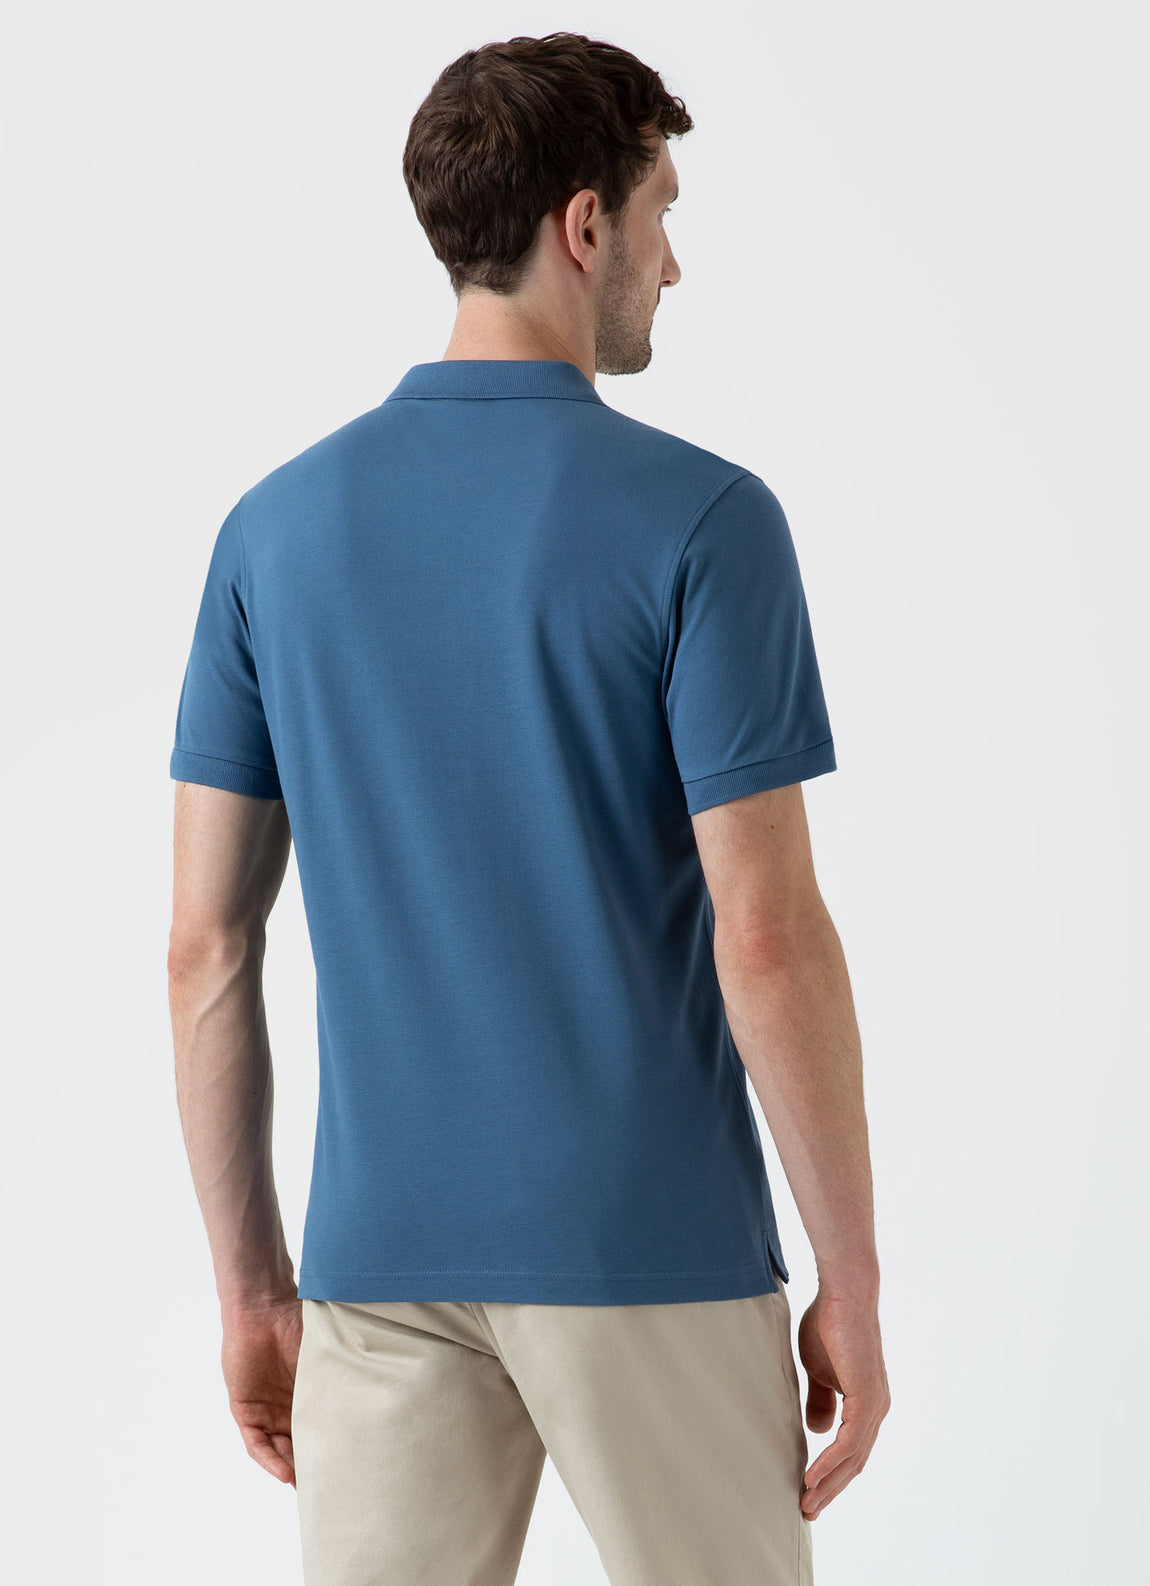 Men's Piqué Polo Shirt in Steel Blue | Sunspel